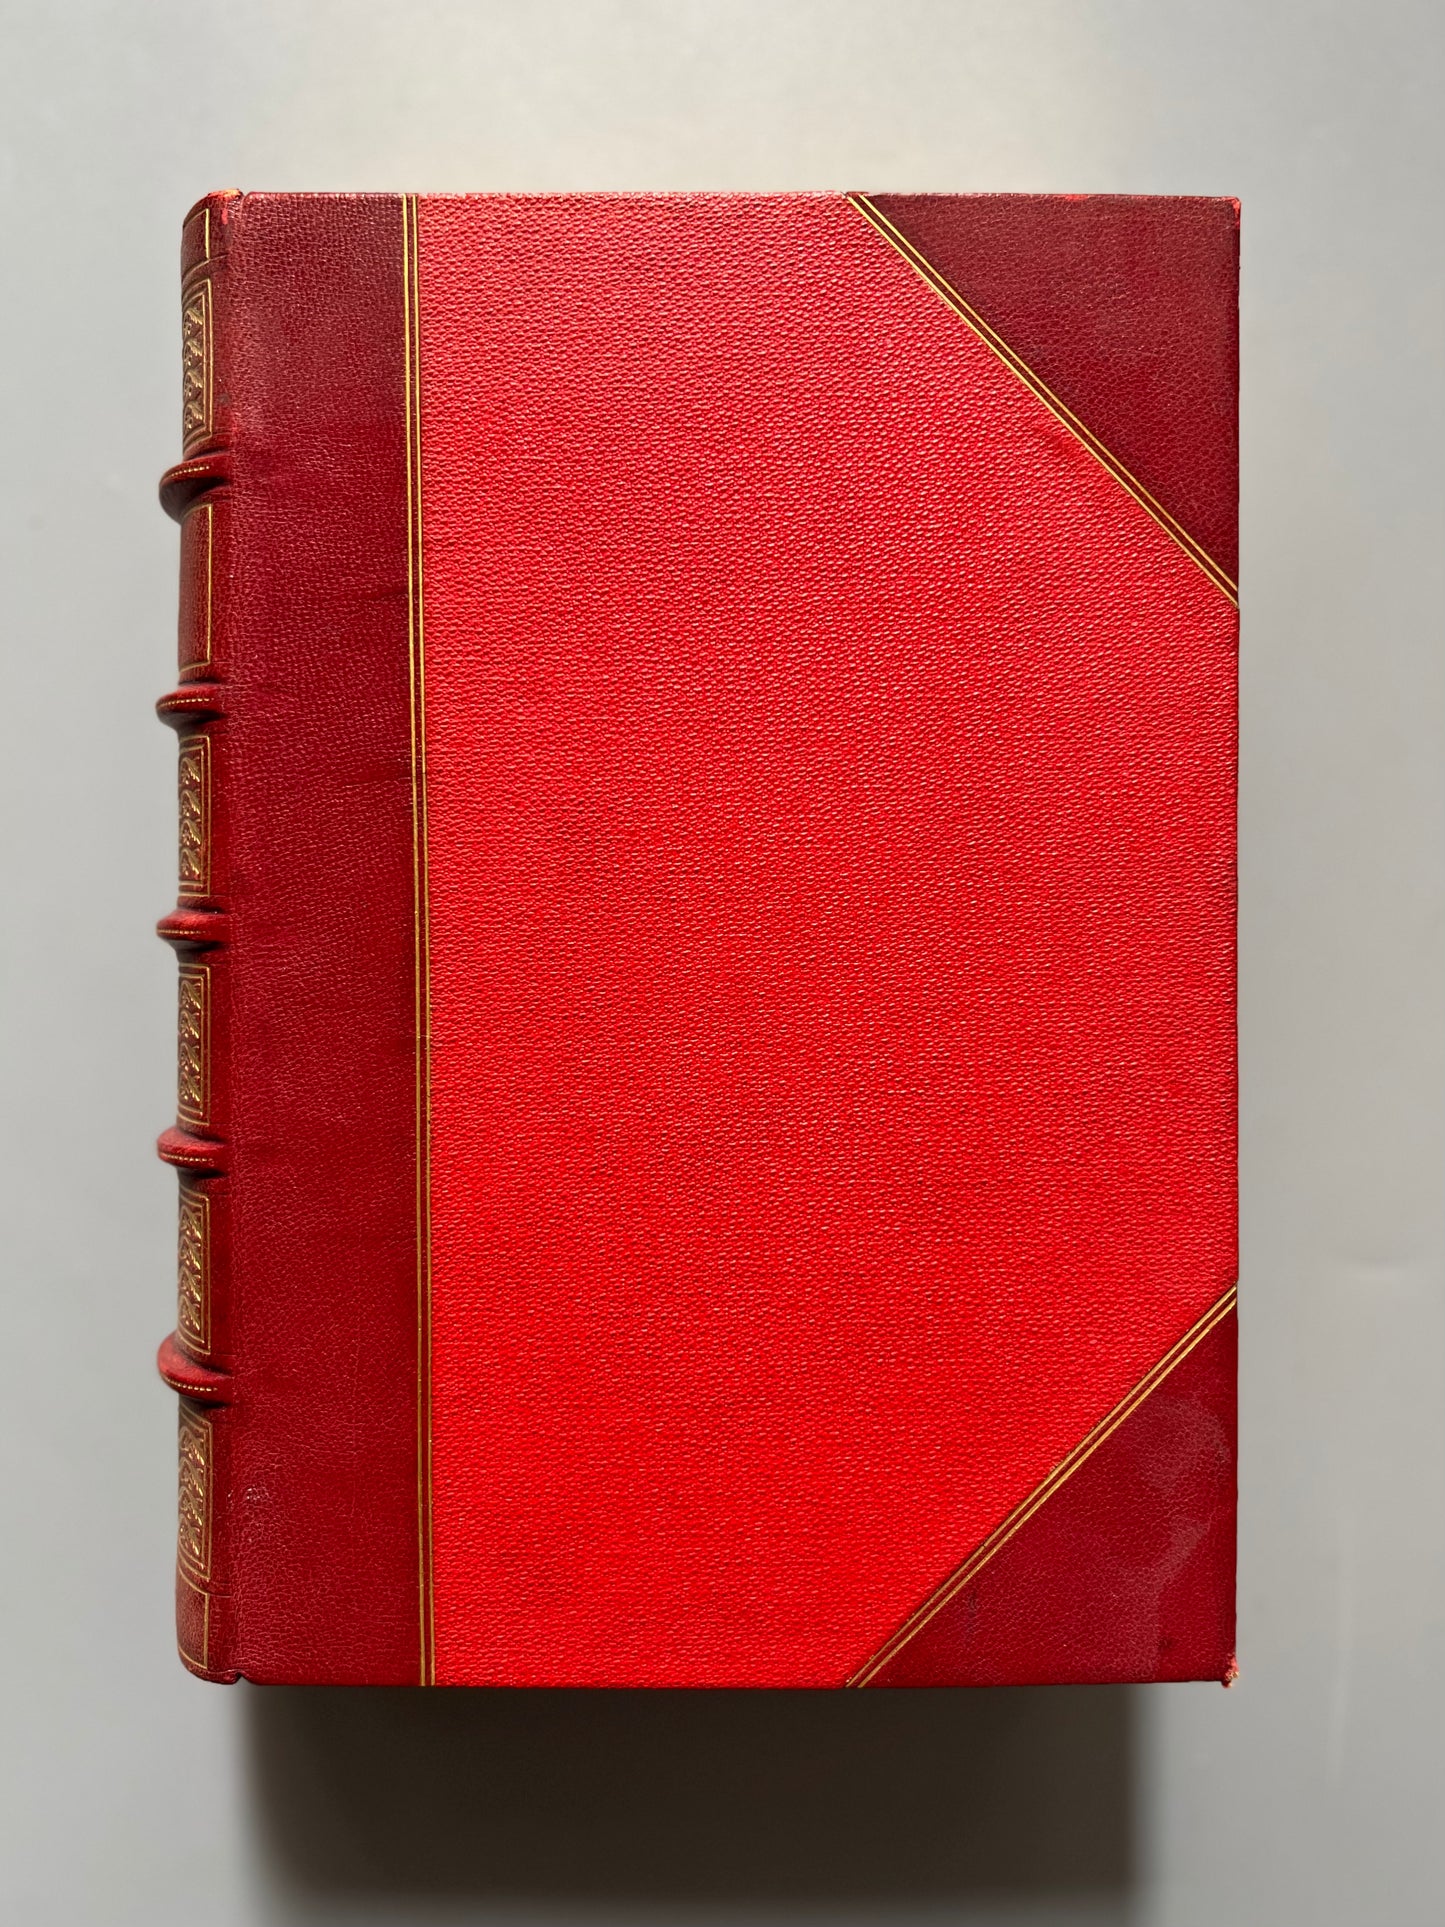 I promessi sposi, Alessandro Manzoni - Libreria editrice di educazione e d'istruzione di Paolo Carrara, 1875